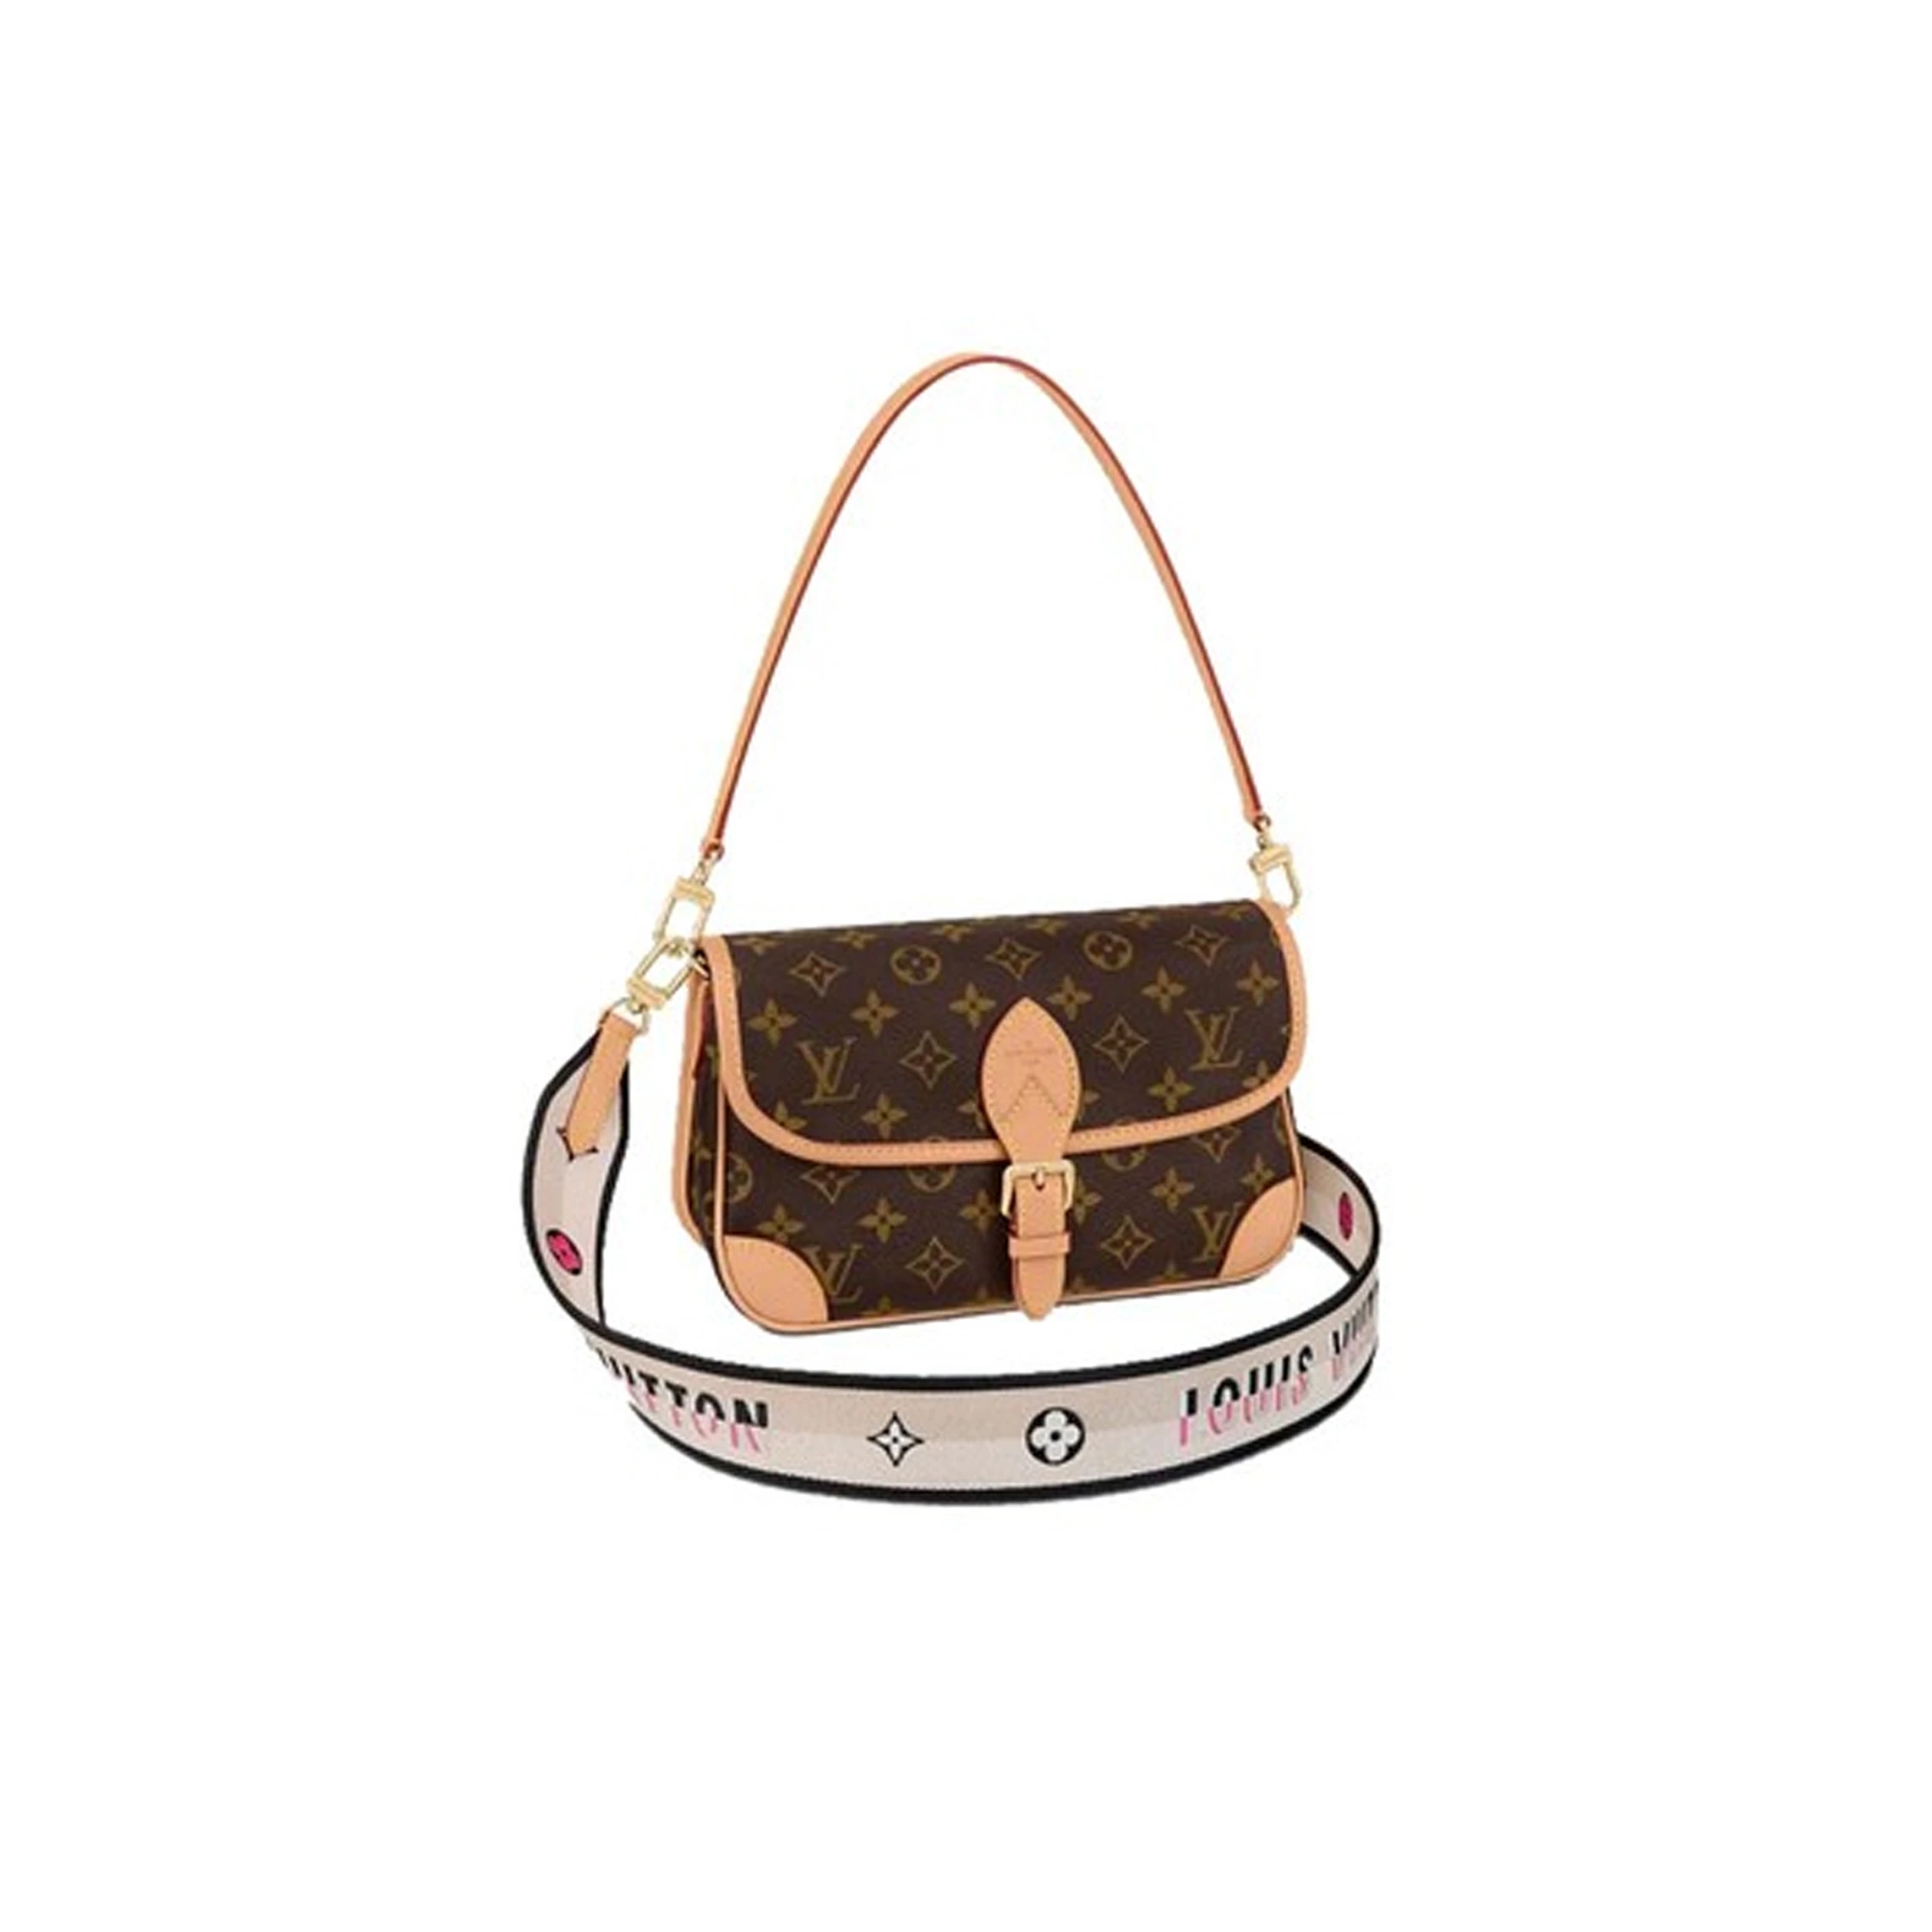 推荐Louis Vuitton/路易威登 DIANE 女士手袋单肩包双��肩带 M45985 送礼好物商品